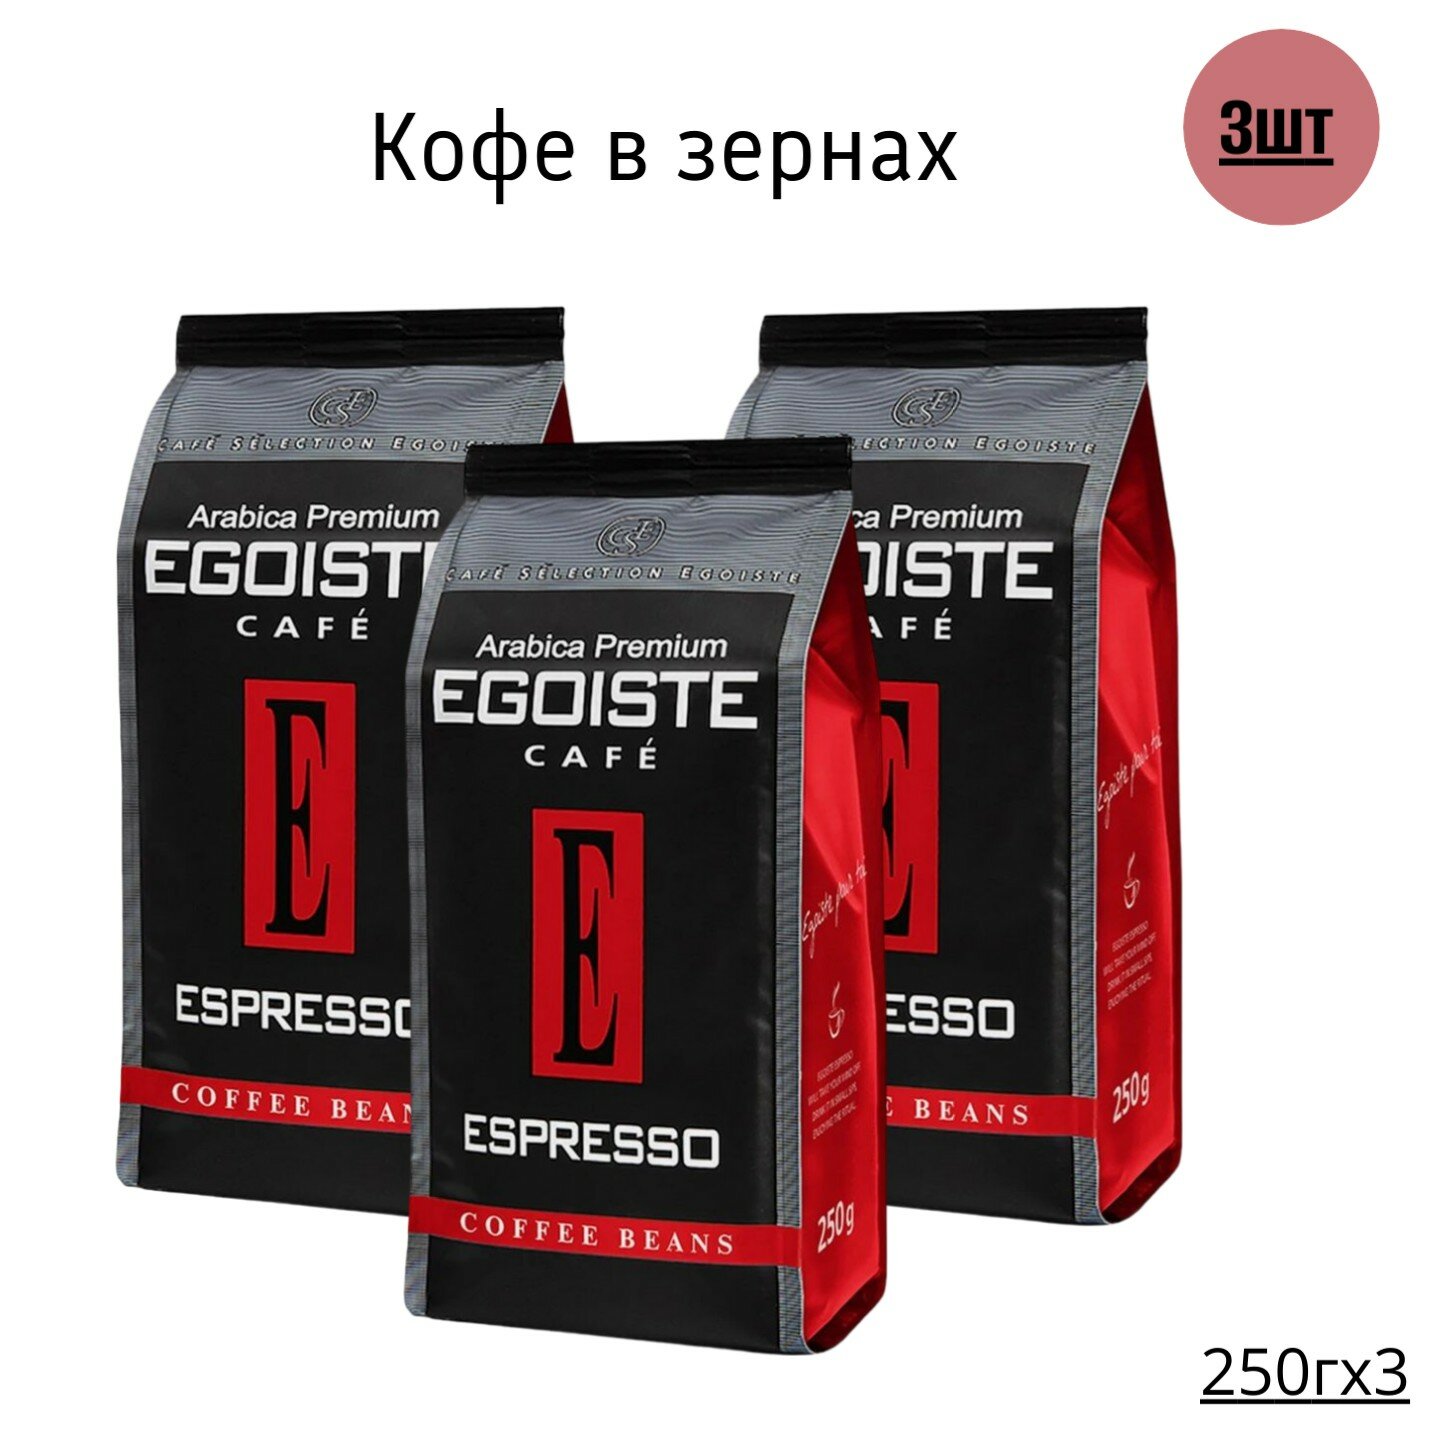 Кофе в зернах Egoiste Espresso, 250 г-3шт